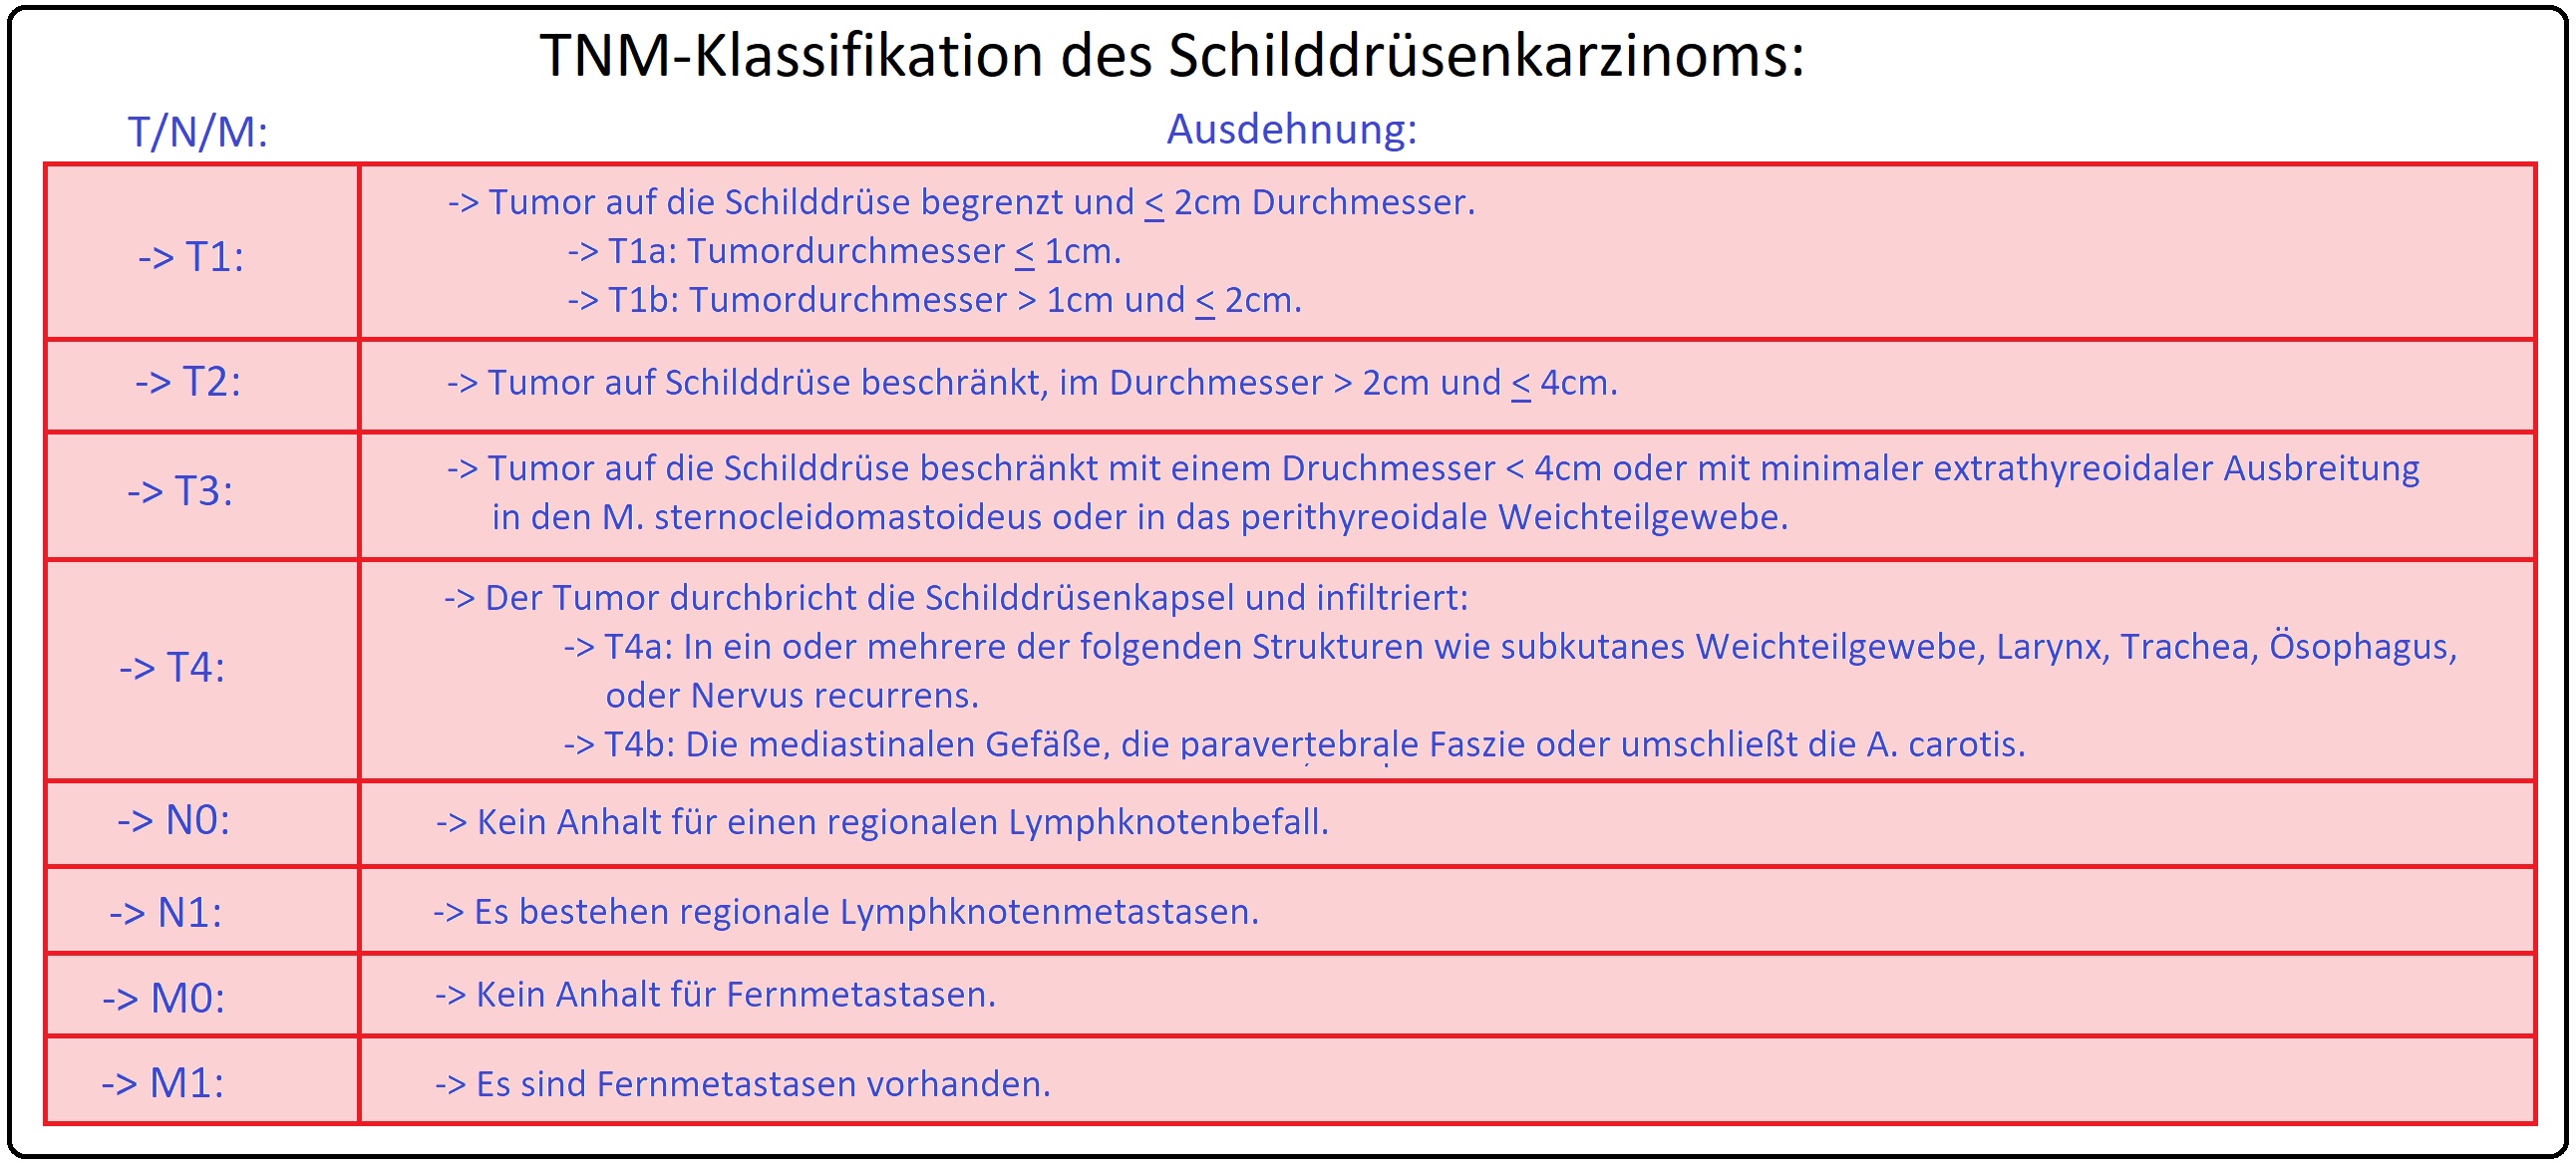 461 TNM Klassifikation des Schilddrüsenkarzinoms